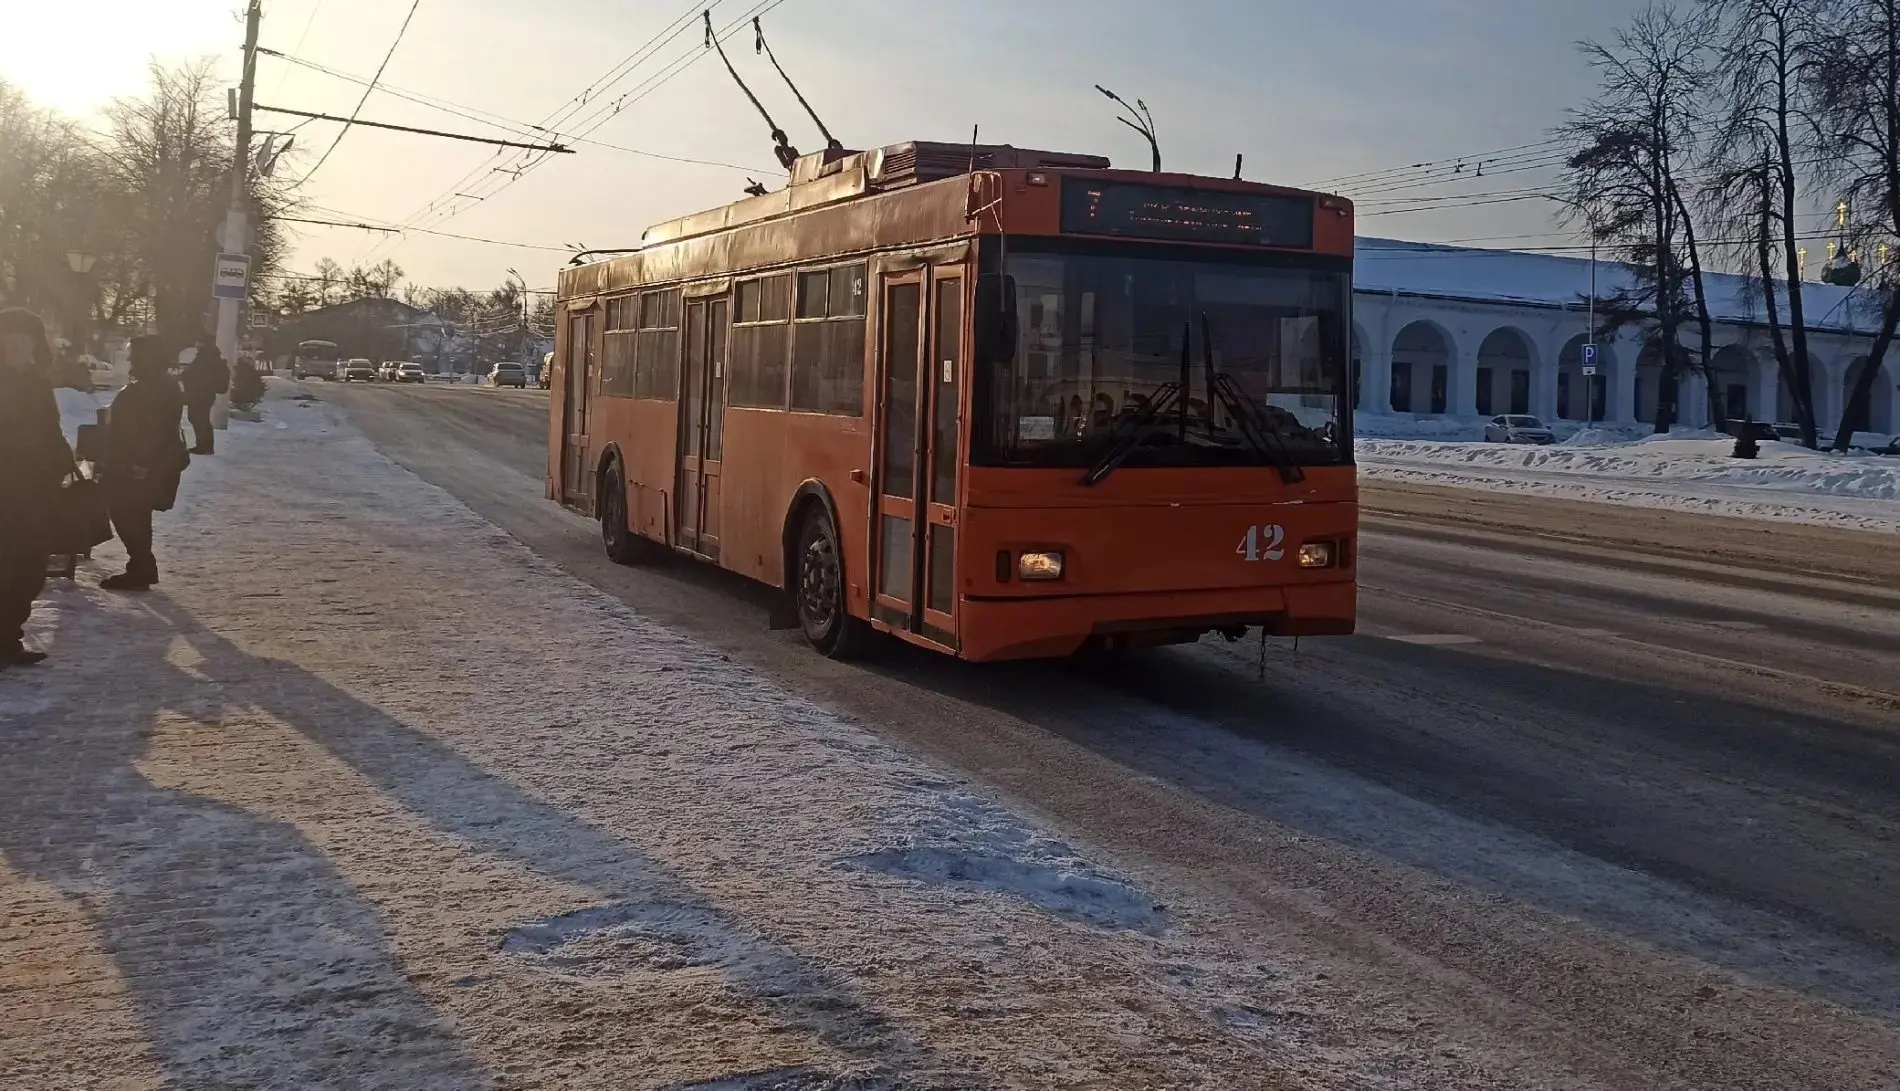 Удивительное рядом: сколько стоит реальная поездка на троллейбусе в Костроме